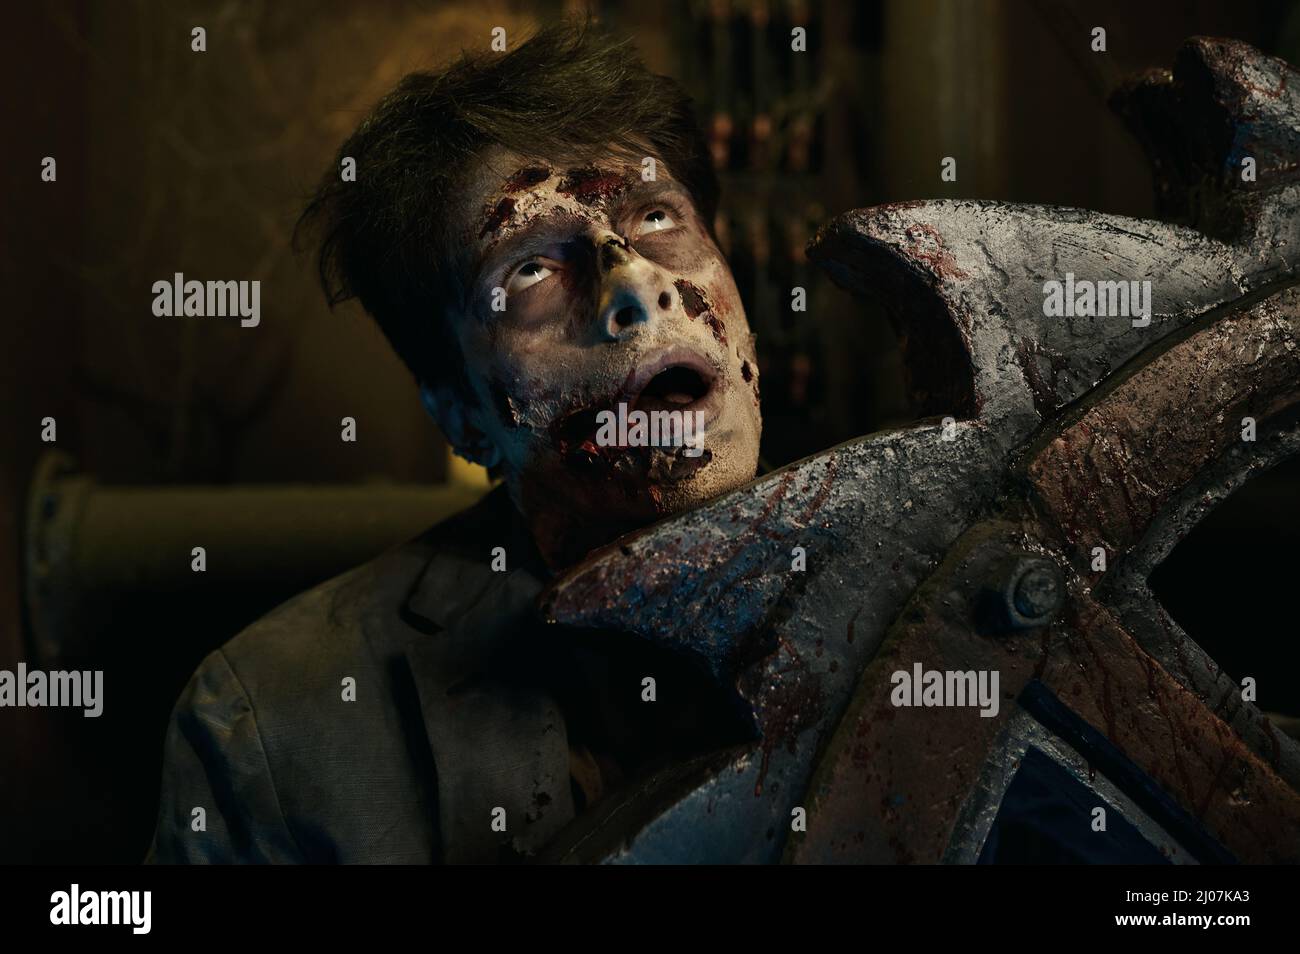 Scène d'horreur avec homme zombie poignardé Banque D'Images